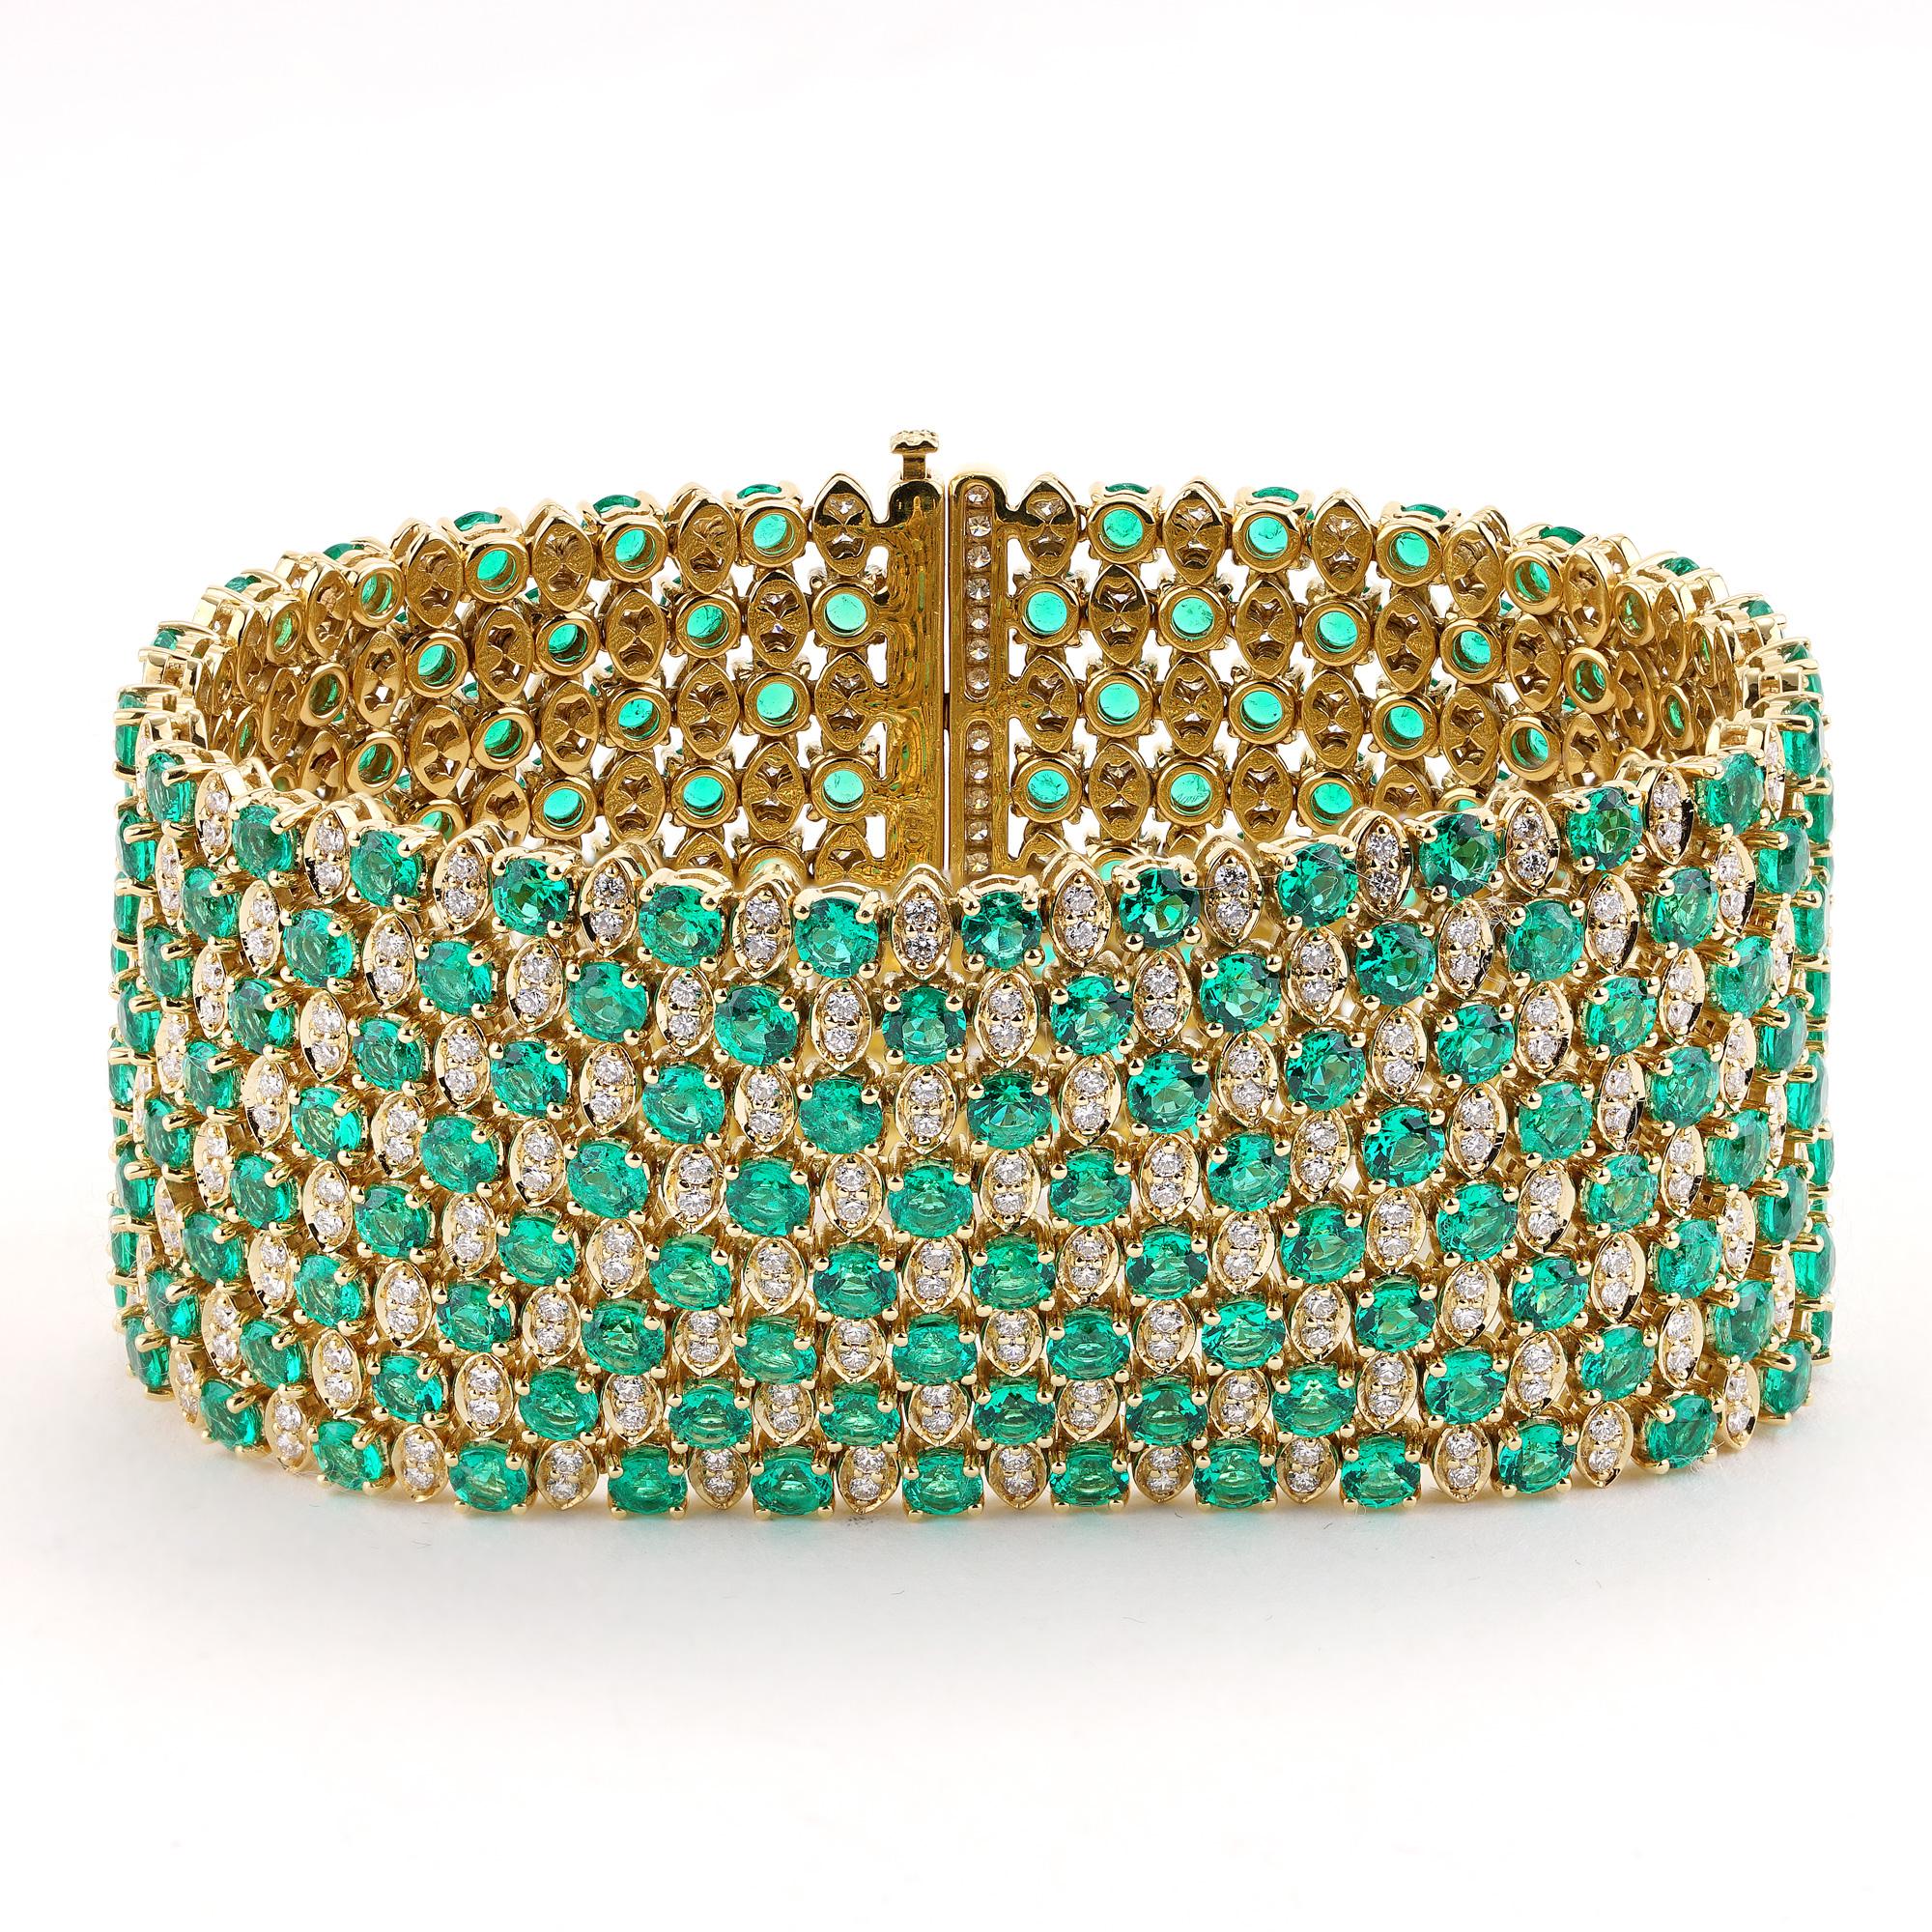 Erhöhen Sie Ihren Stil mit diesem exquisiten Armband mit 27,33 Karat lebhaften kolumbianischen grünen Smaragden und 5,07 Karat schillernden Diamanten der Farbe G und Reinheit VS. Dieses Armband wurde für besondere Momente auf dem roten Teppich